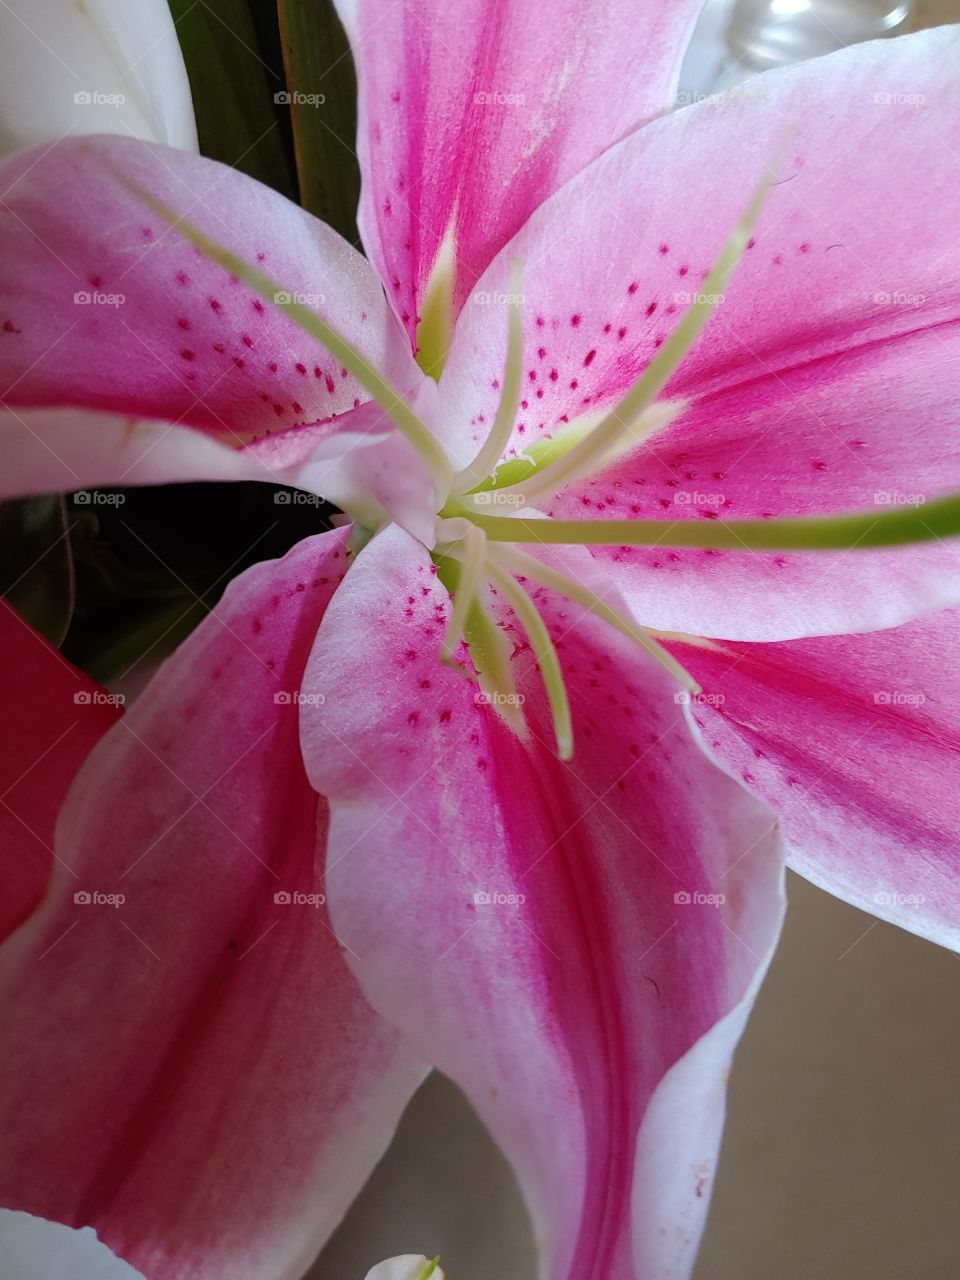 pink floral